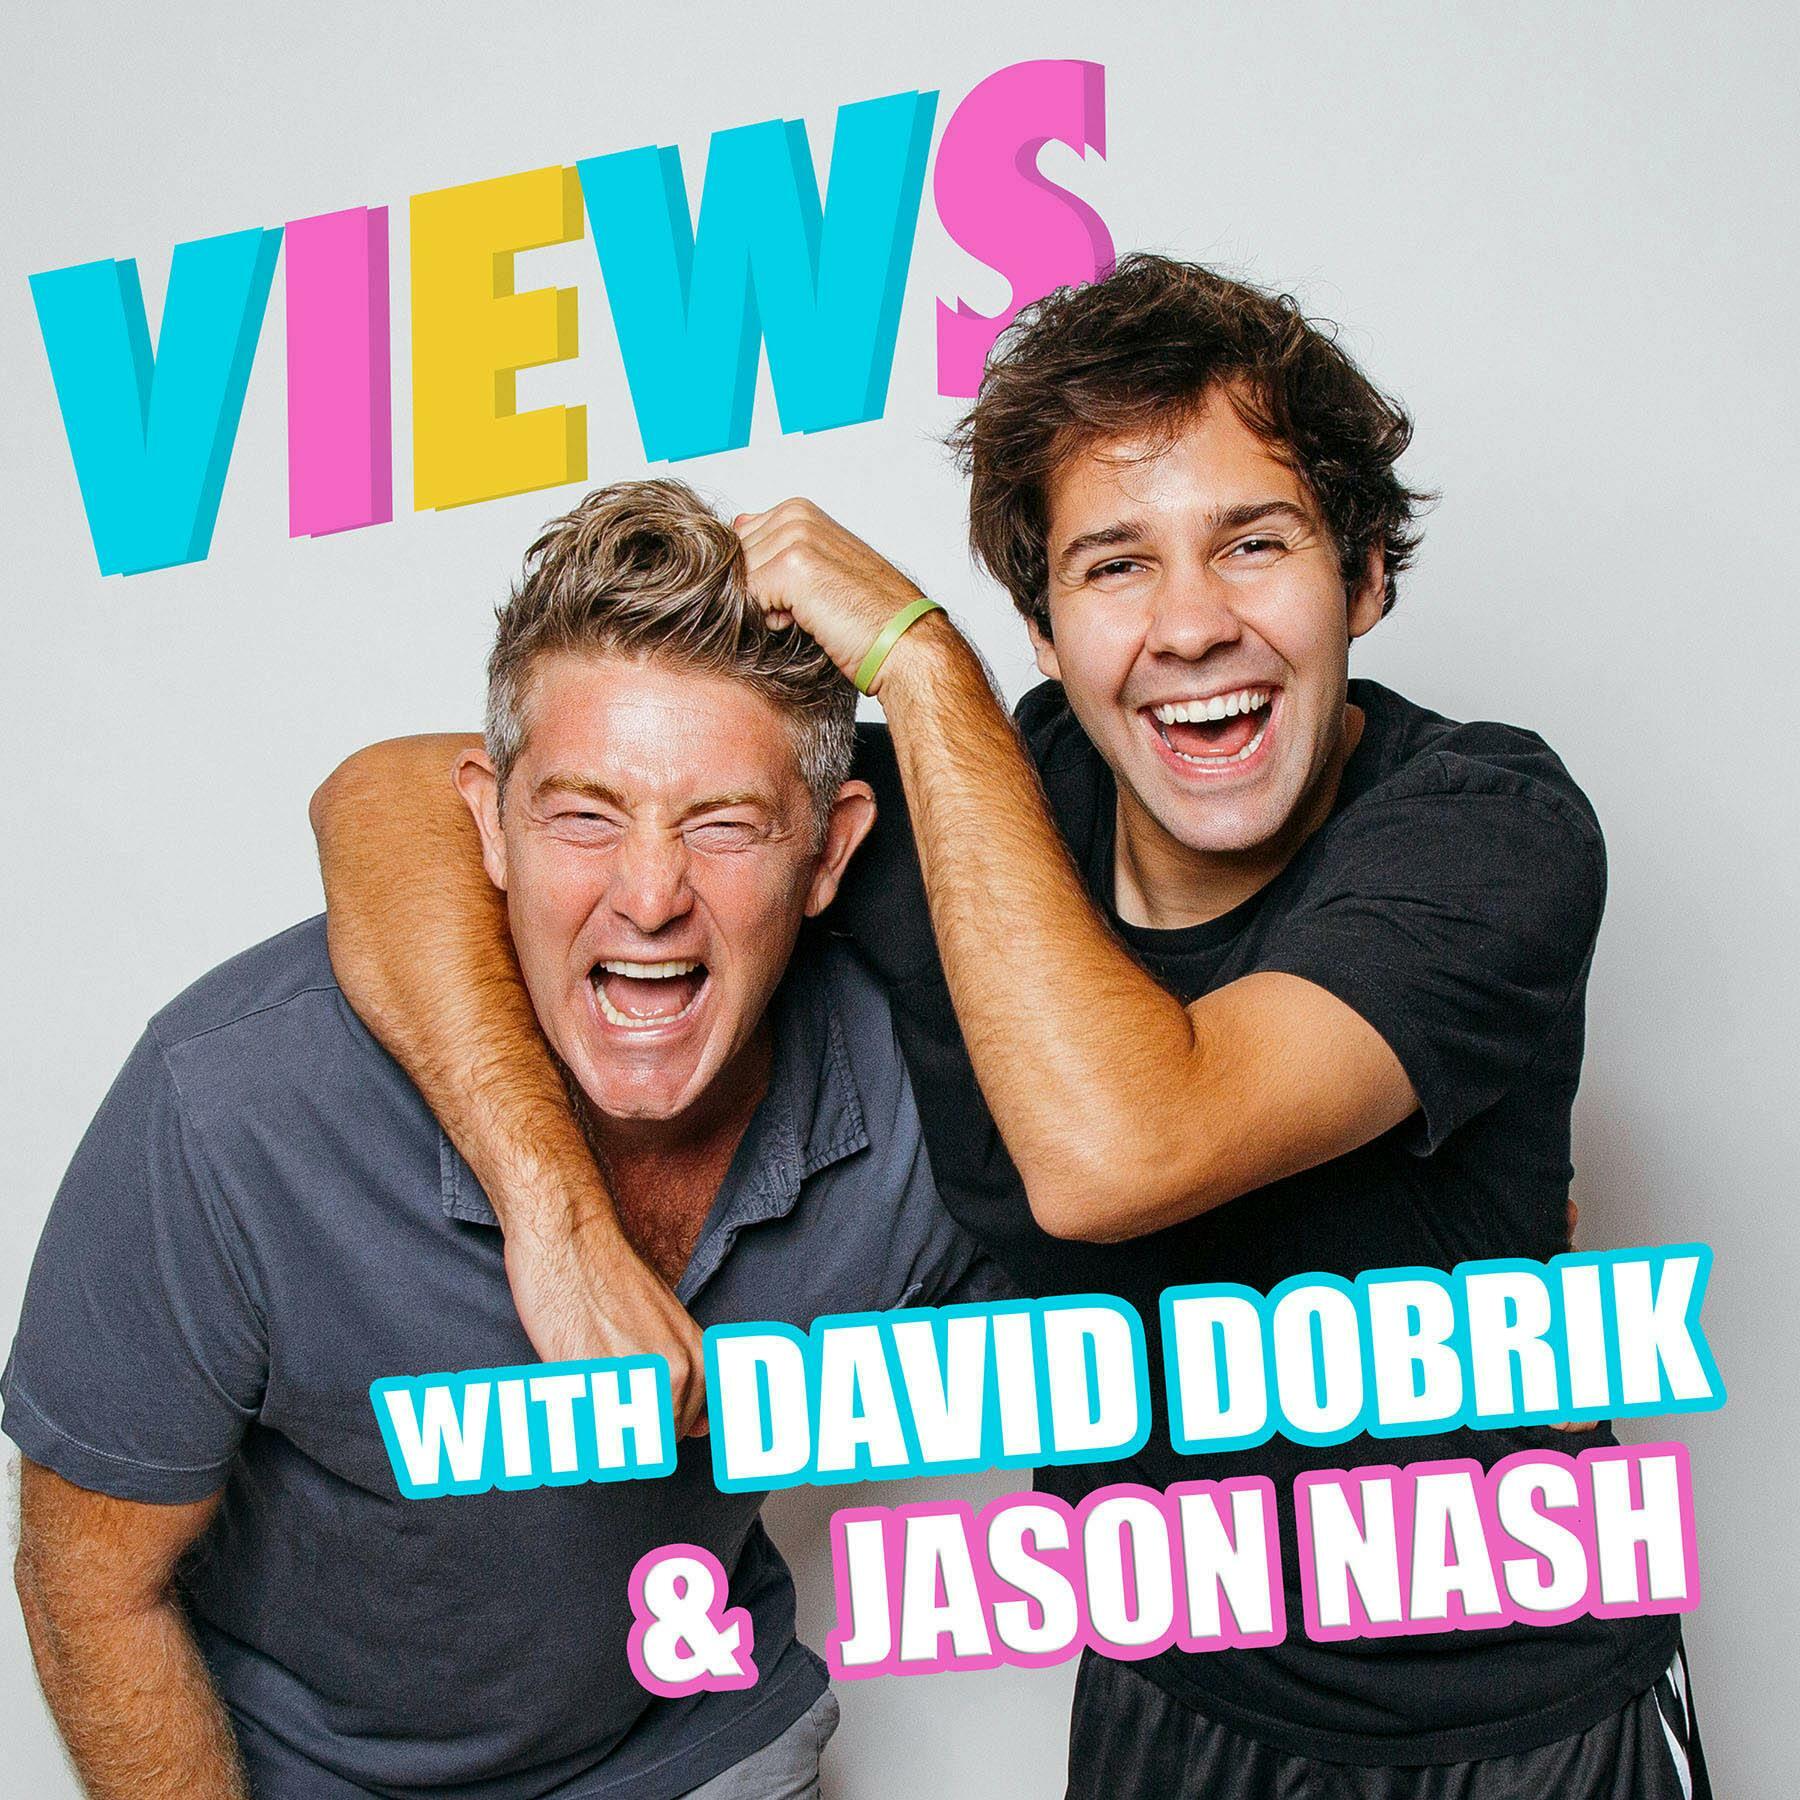 VIEWS with David Dobrik & Jason Nash iHeart